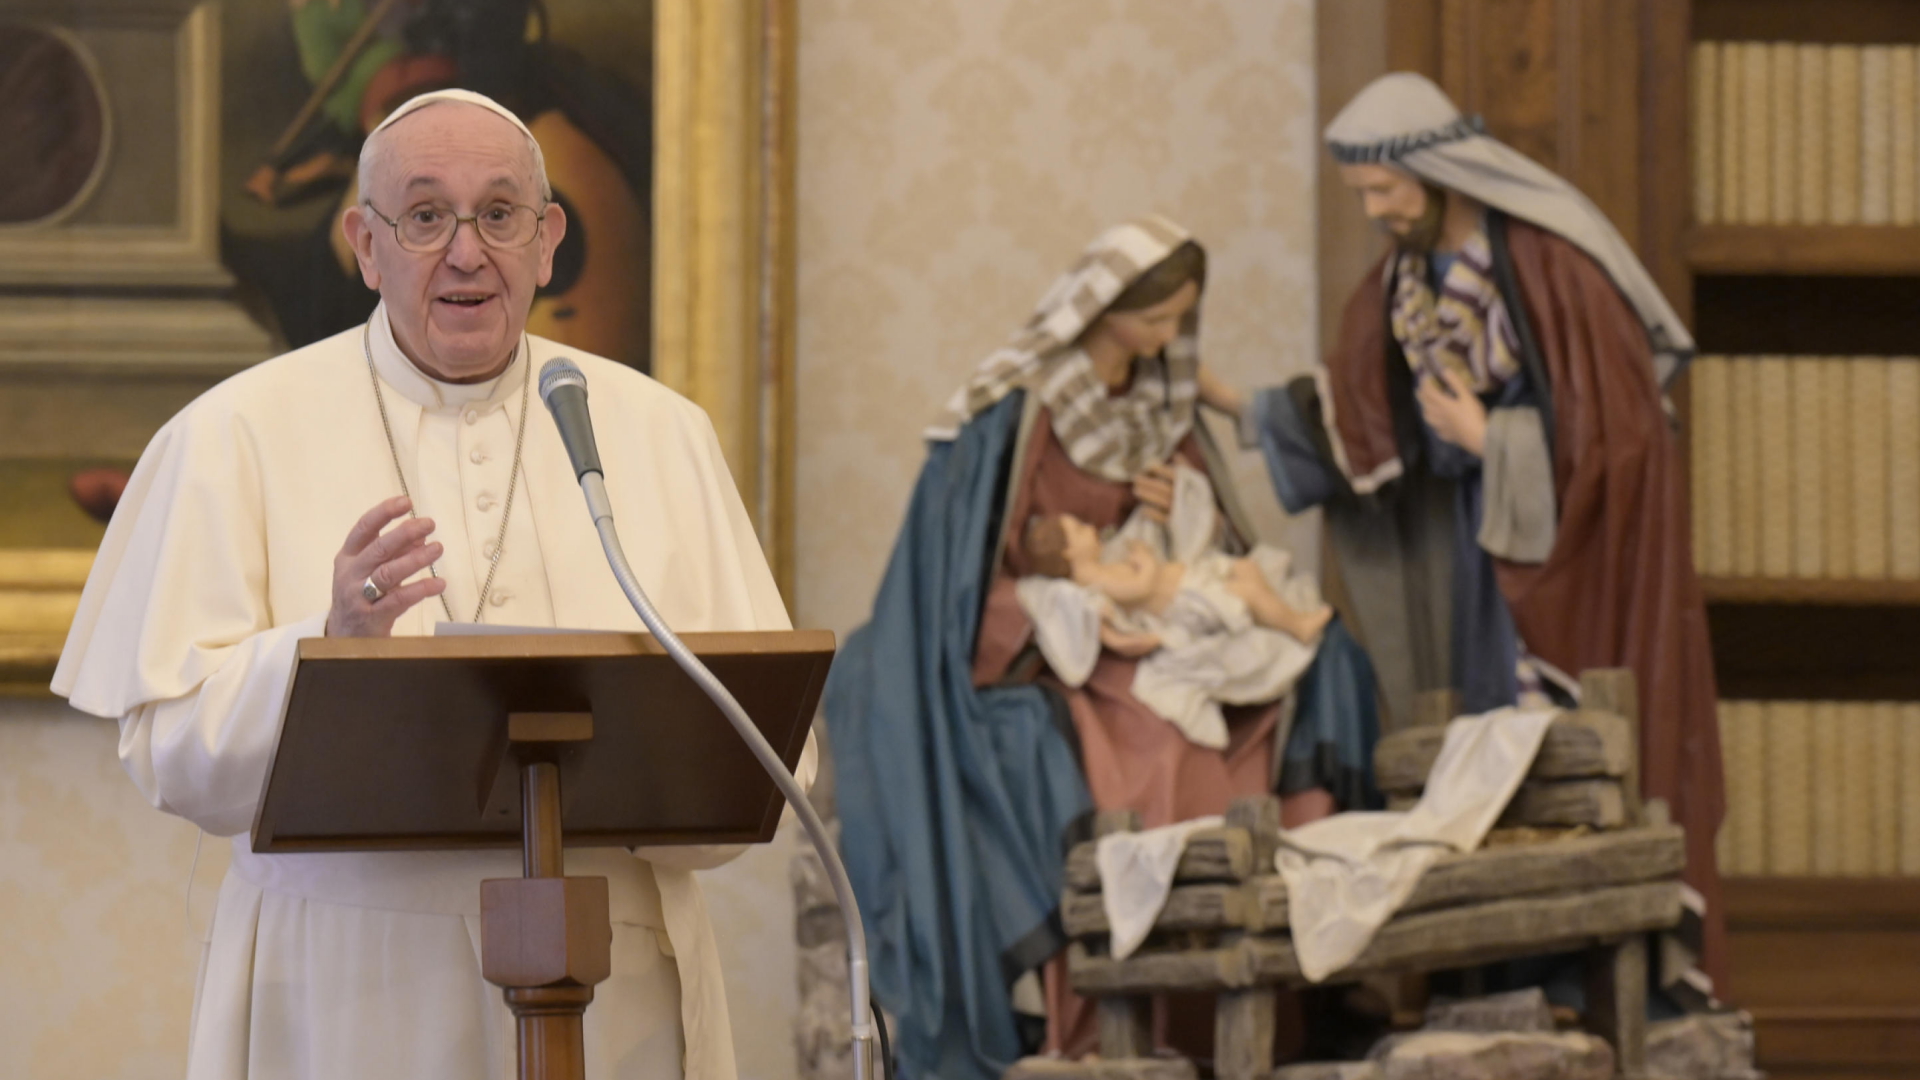 Papst Franziskus beim Angelus-Gebet im Apostolischen Palast| Bildquelle: VATICAN MEDIA HANDOUT/EPA-EFE/Sh